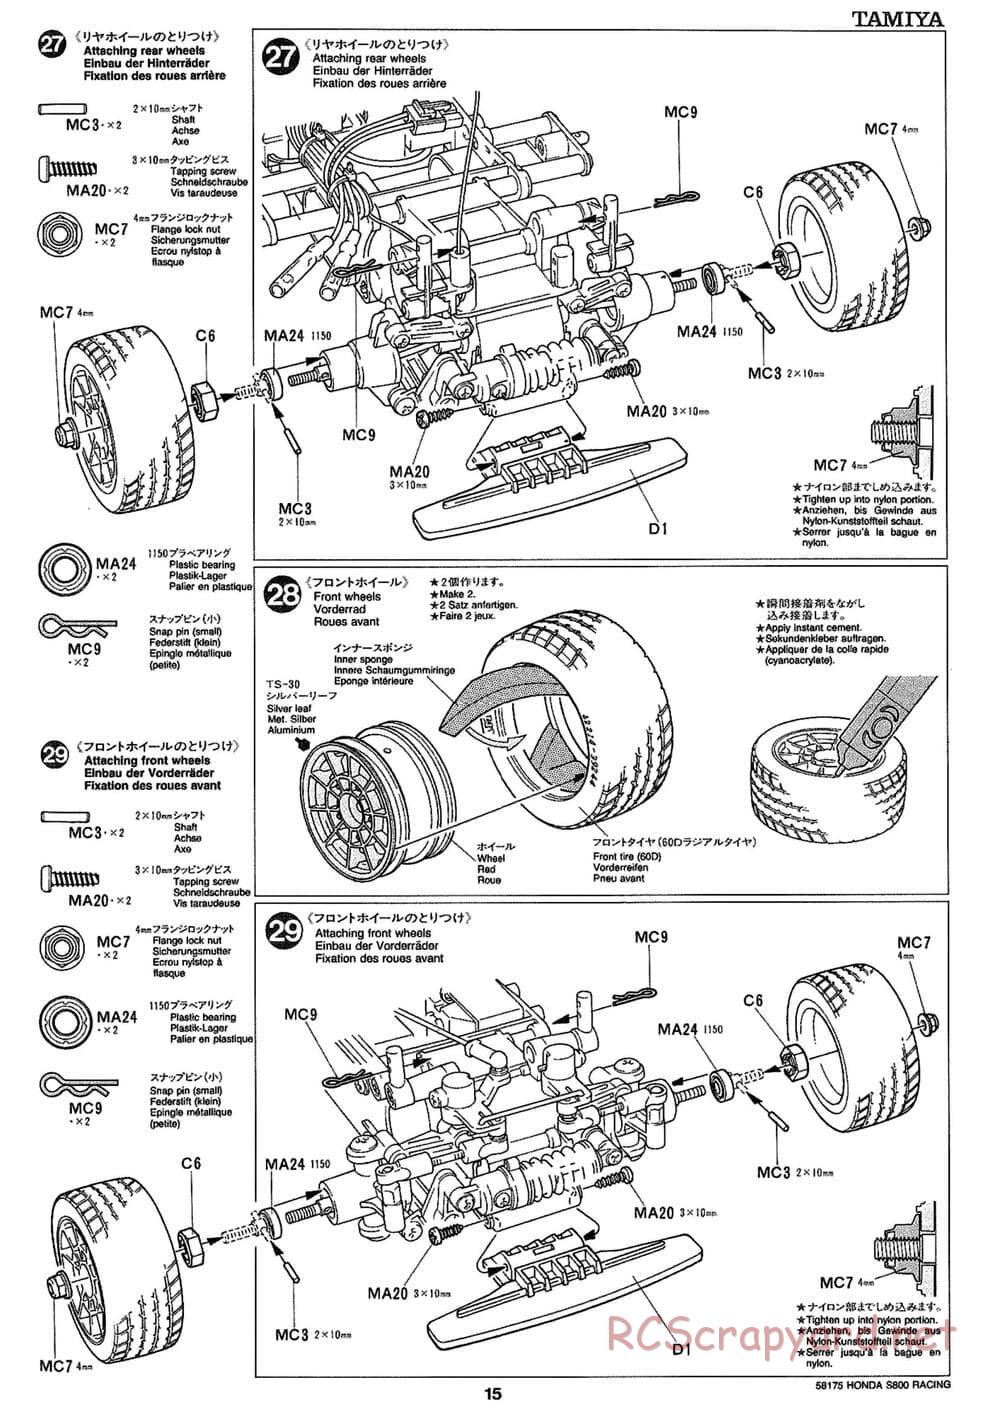 Tamiya - Honda S800 Racing - M02 Chassis - Manual - Page 15